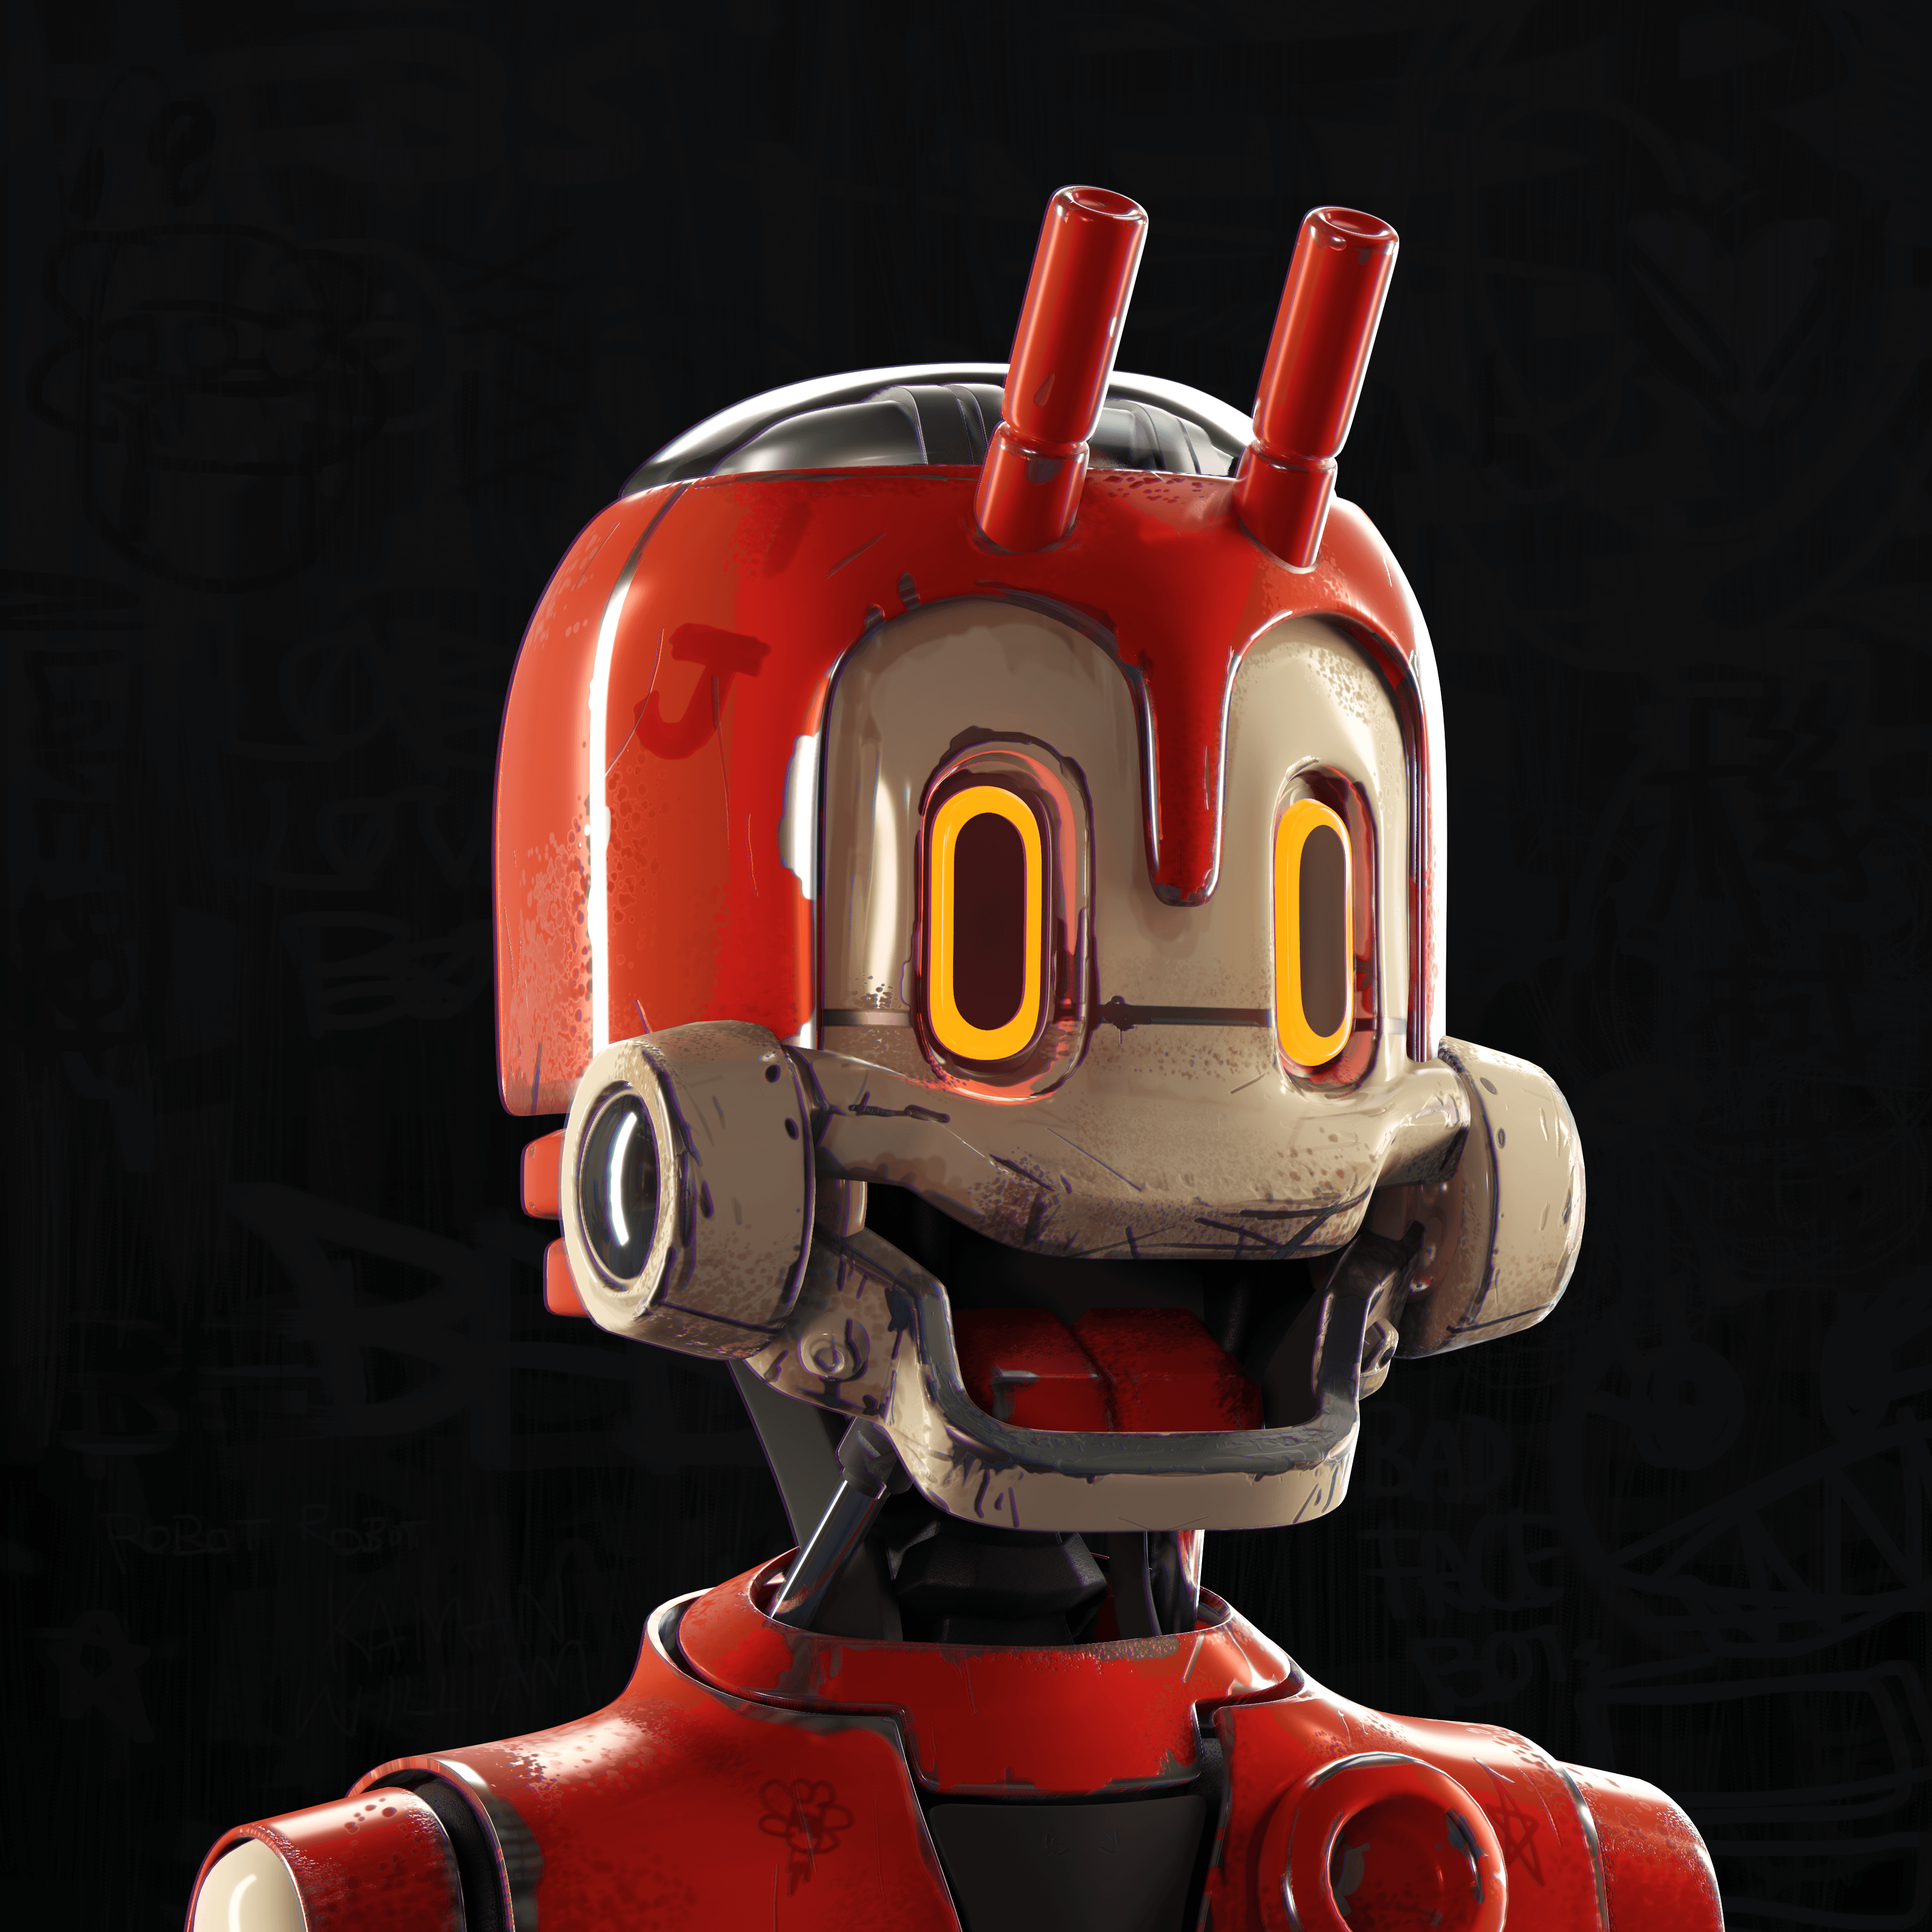 Bad Face Bots #5303